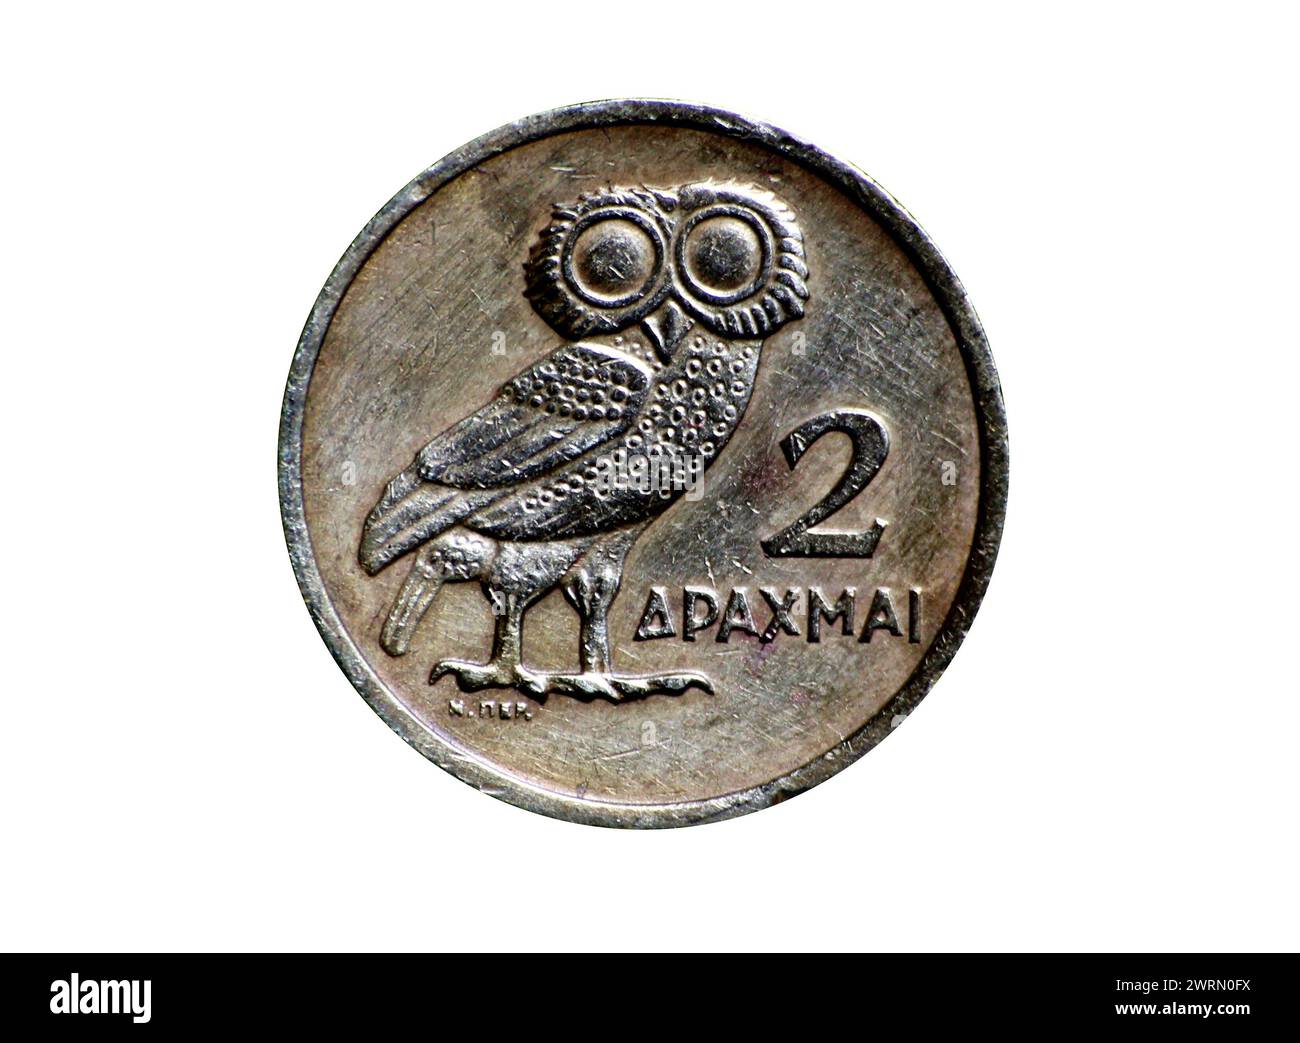 2 monete da dracma della grecia (valuta greca) con gufo, attività finanziarie pre-euro (vecchio collezionabile) isolate su sfondo bianco (ritaglio) Foto Stock